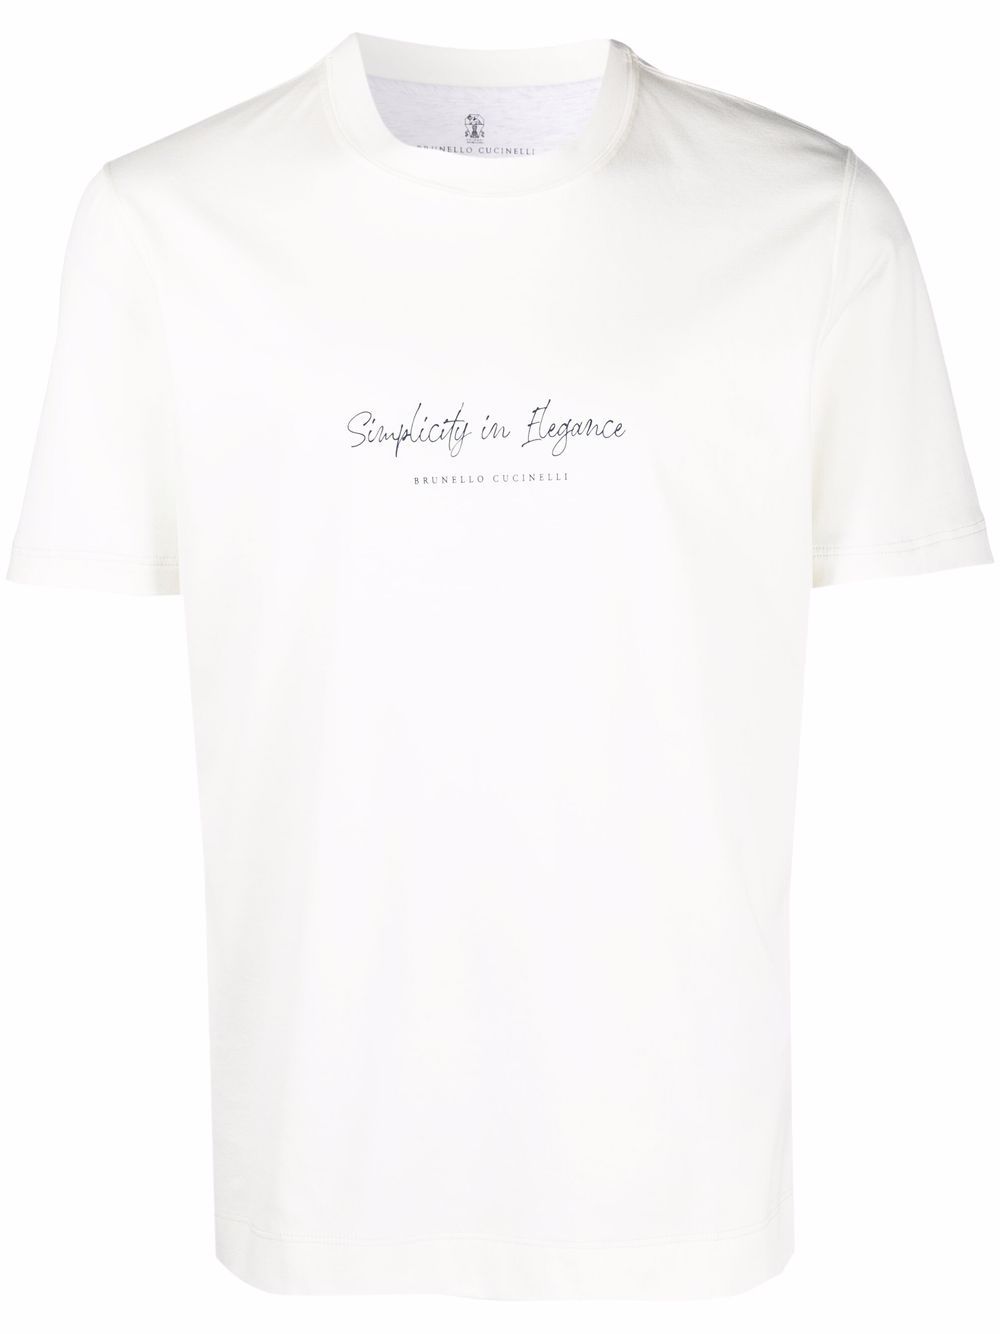 фото Brunello cucinelli футболка с логотипом